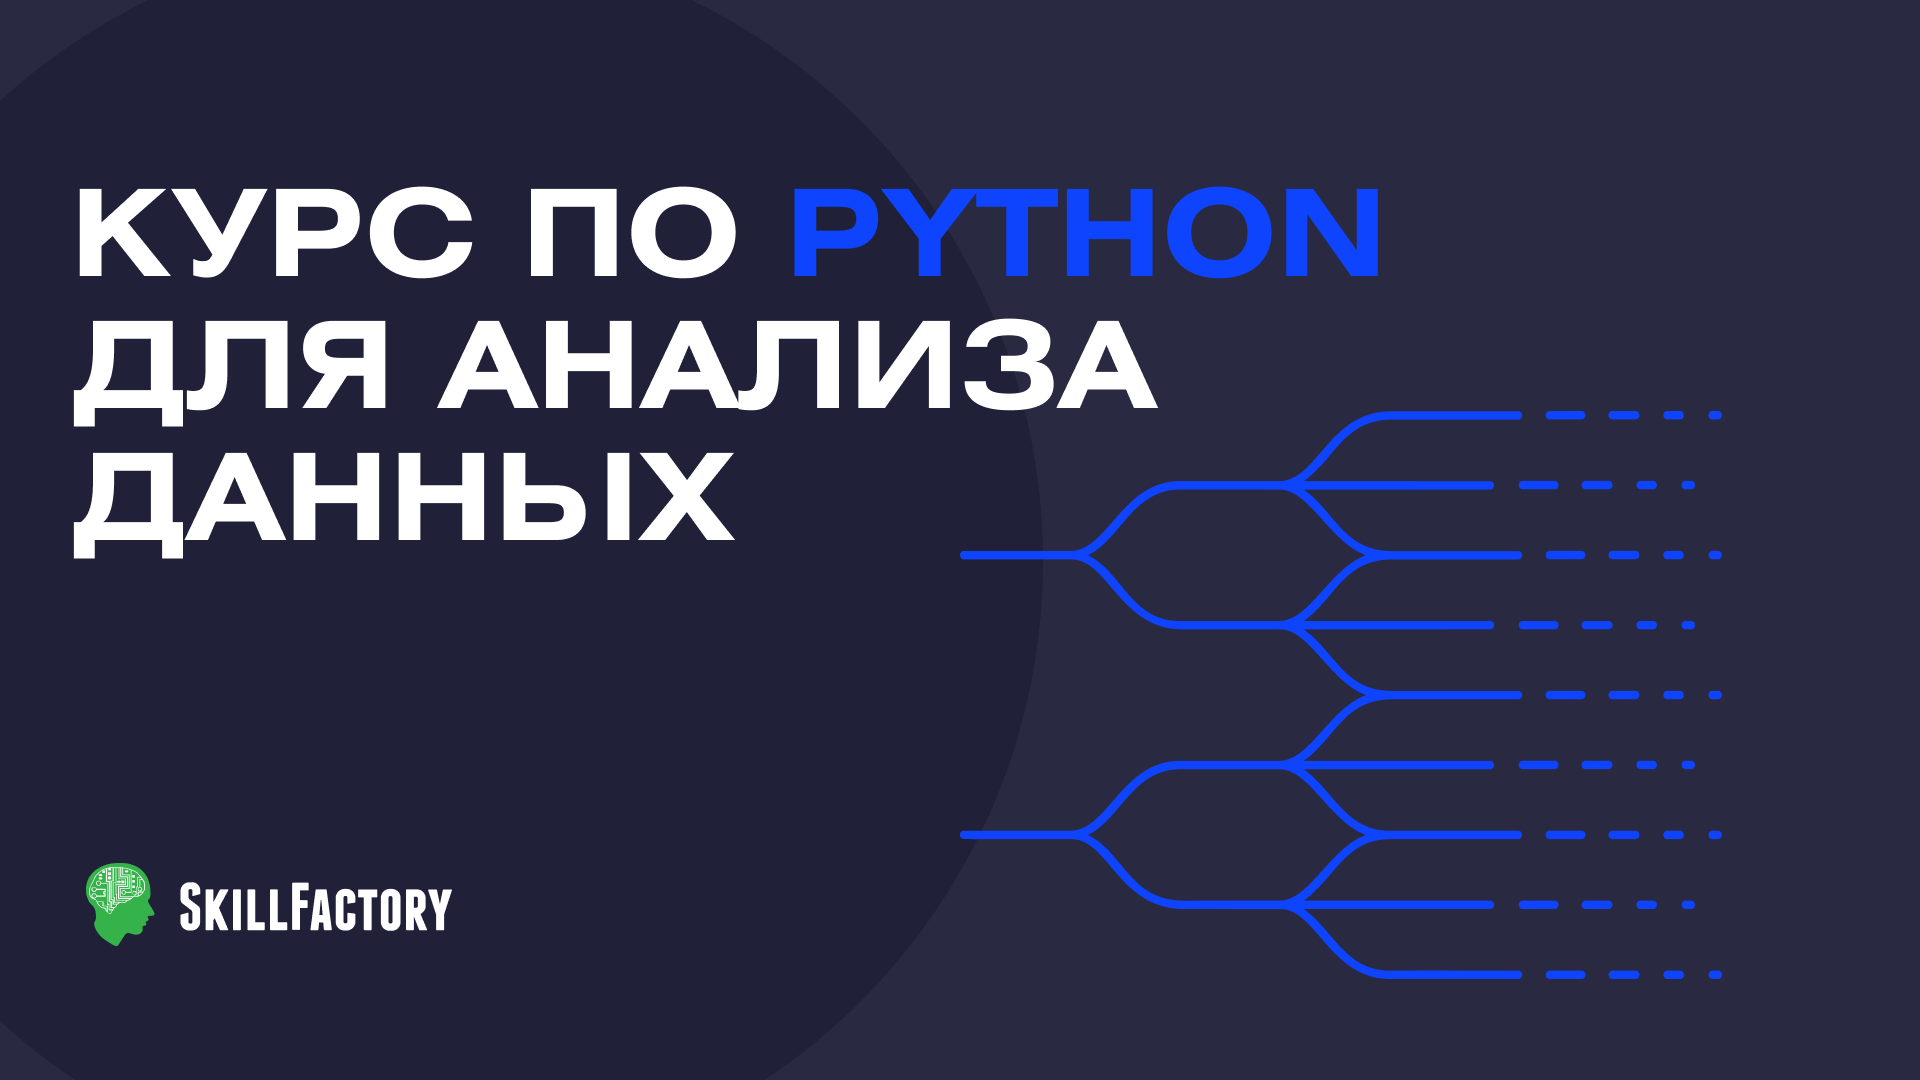 зумштейн феликс python для excel современная среда для автоматизации и анализа данных Python для анализа данных